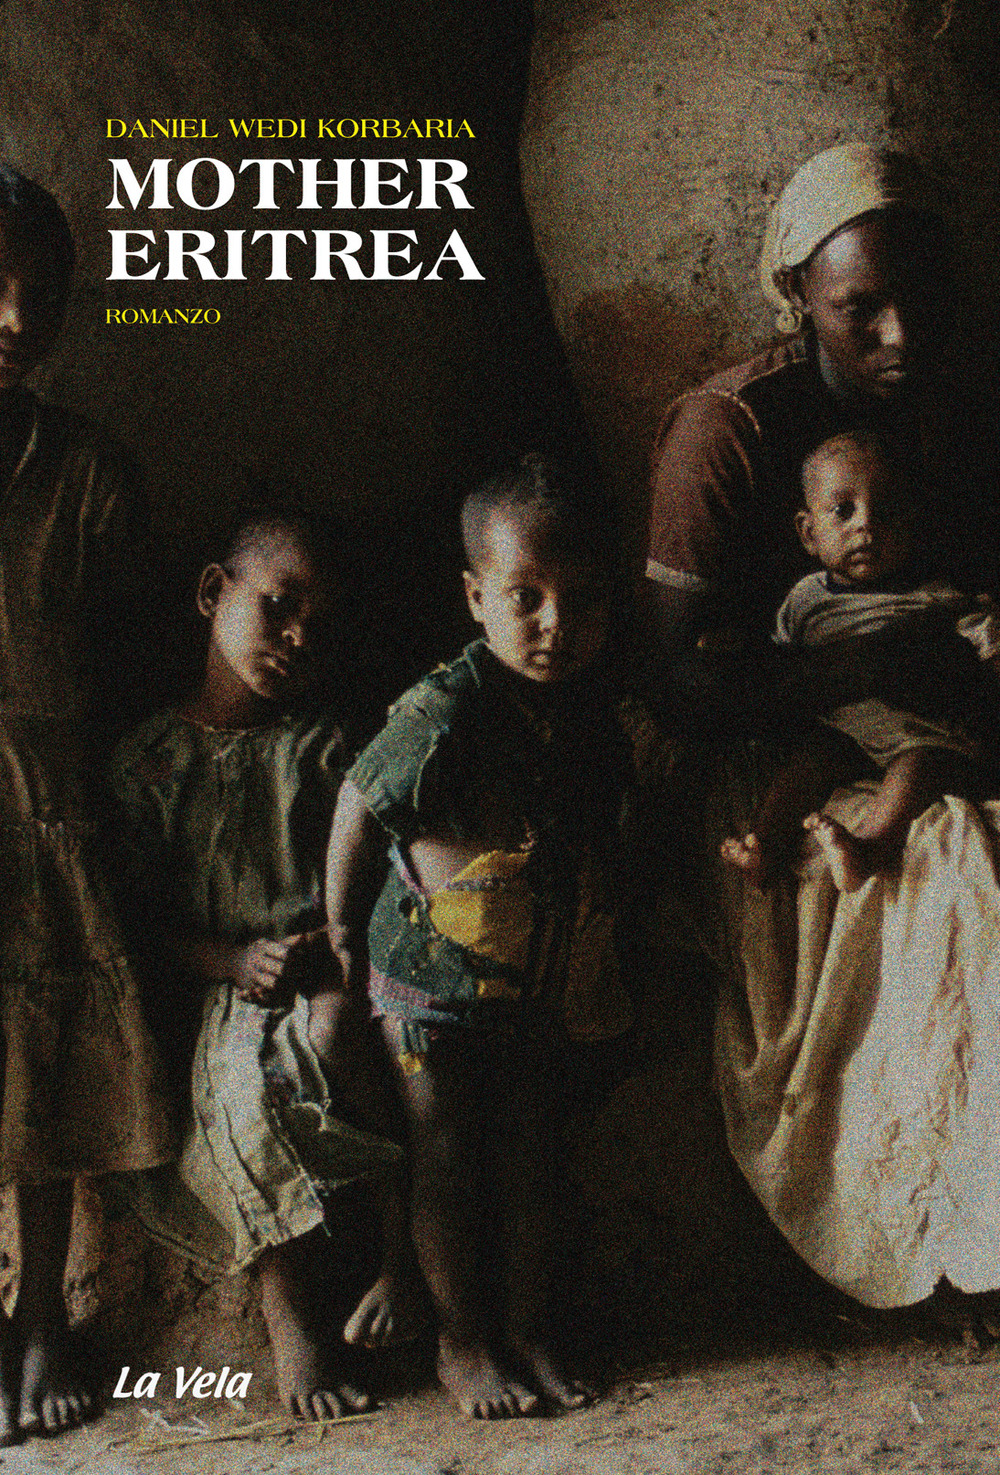 Libri Wedi Korbaria Daniel - Mother Eritrea NUOVO SIGILLATO, EDIZIONE DEL 15/04/2019 SUBITO DISPONIBILE